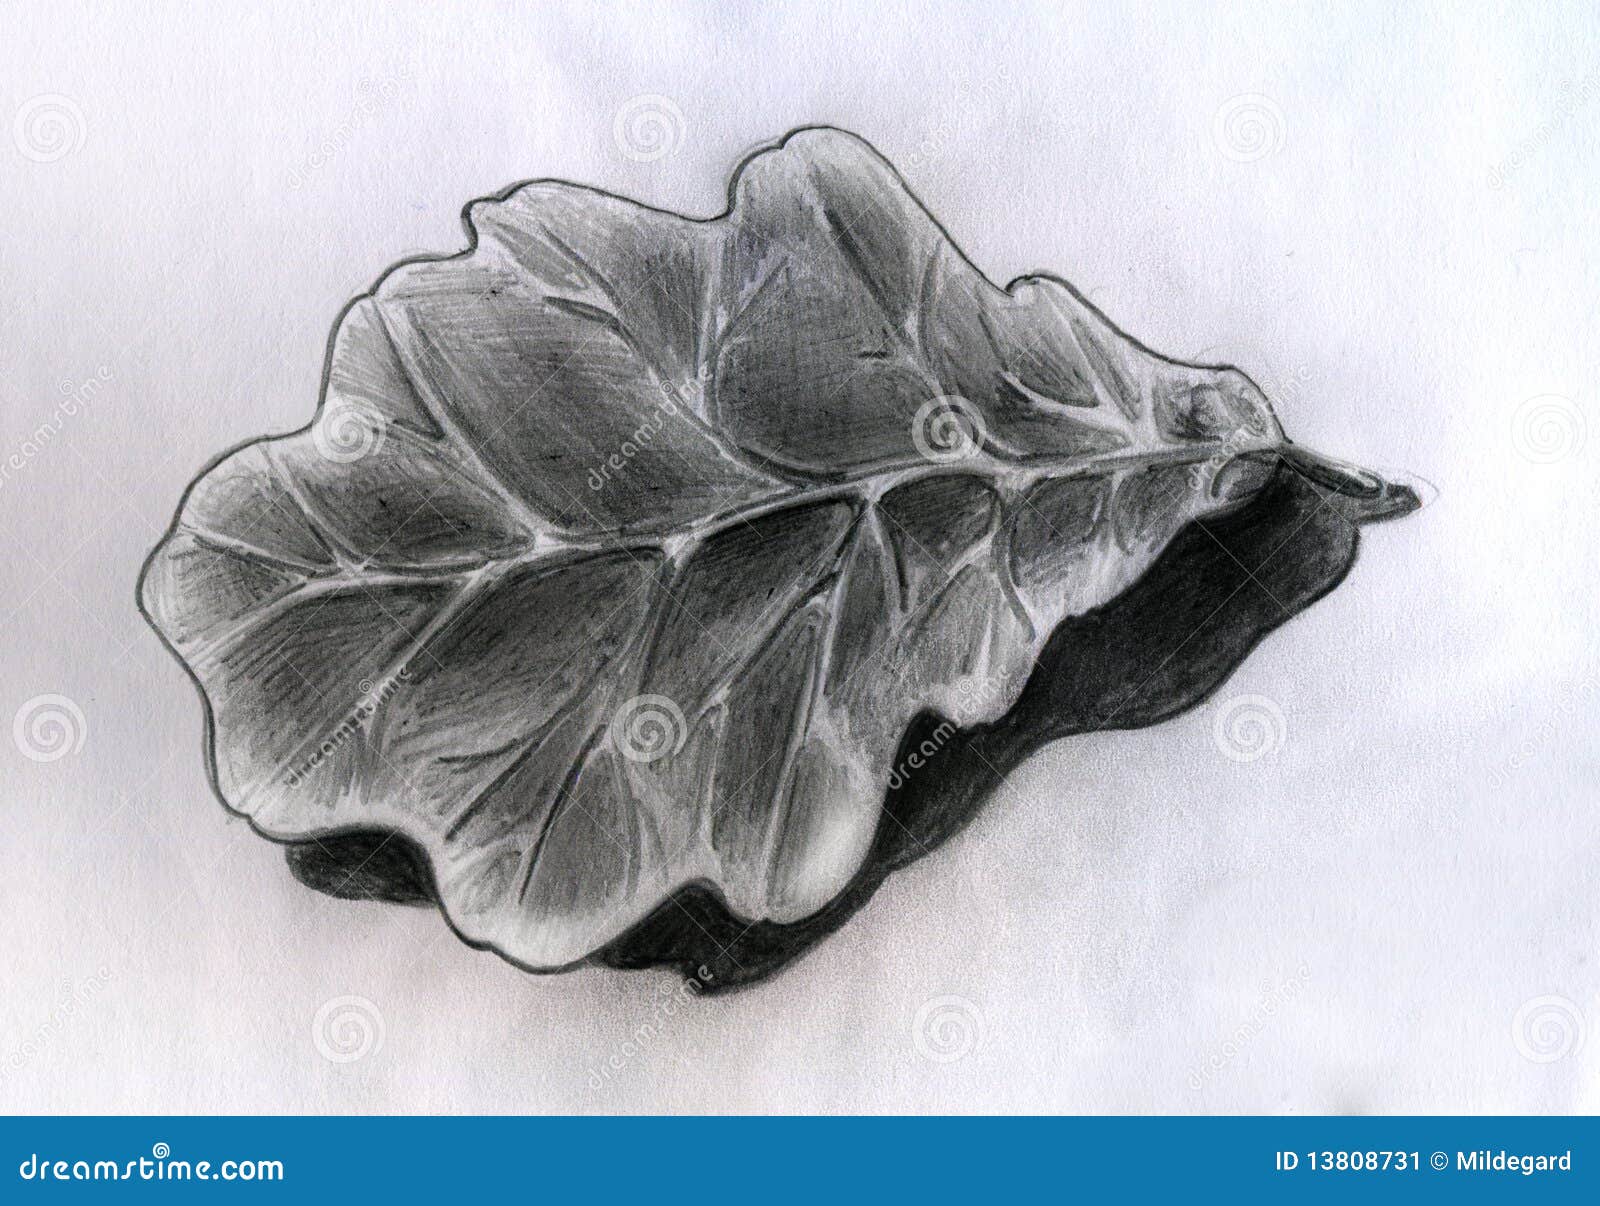 Oak Leaf - Sketch Stock Image - Image: 13808731